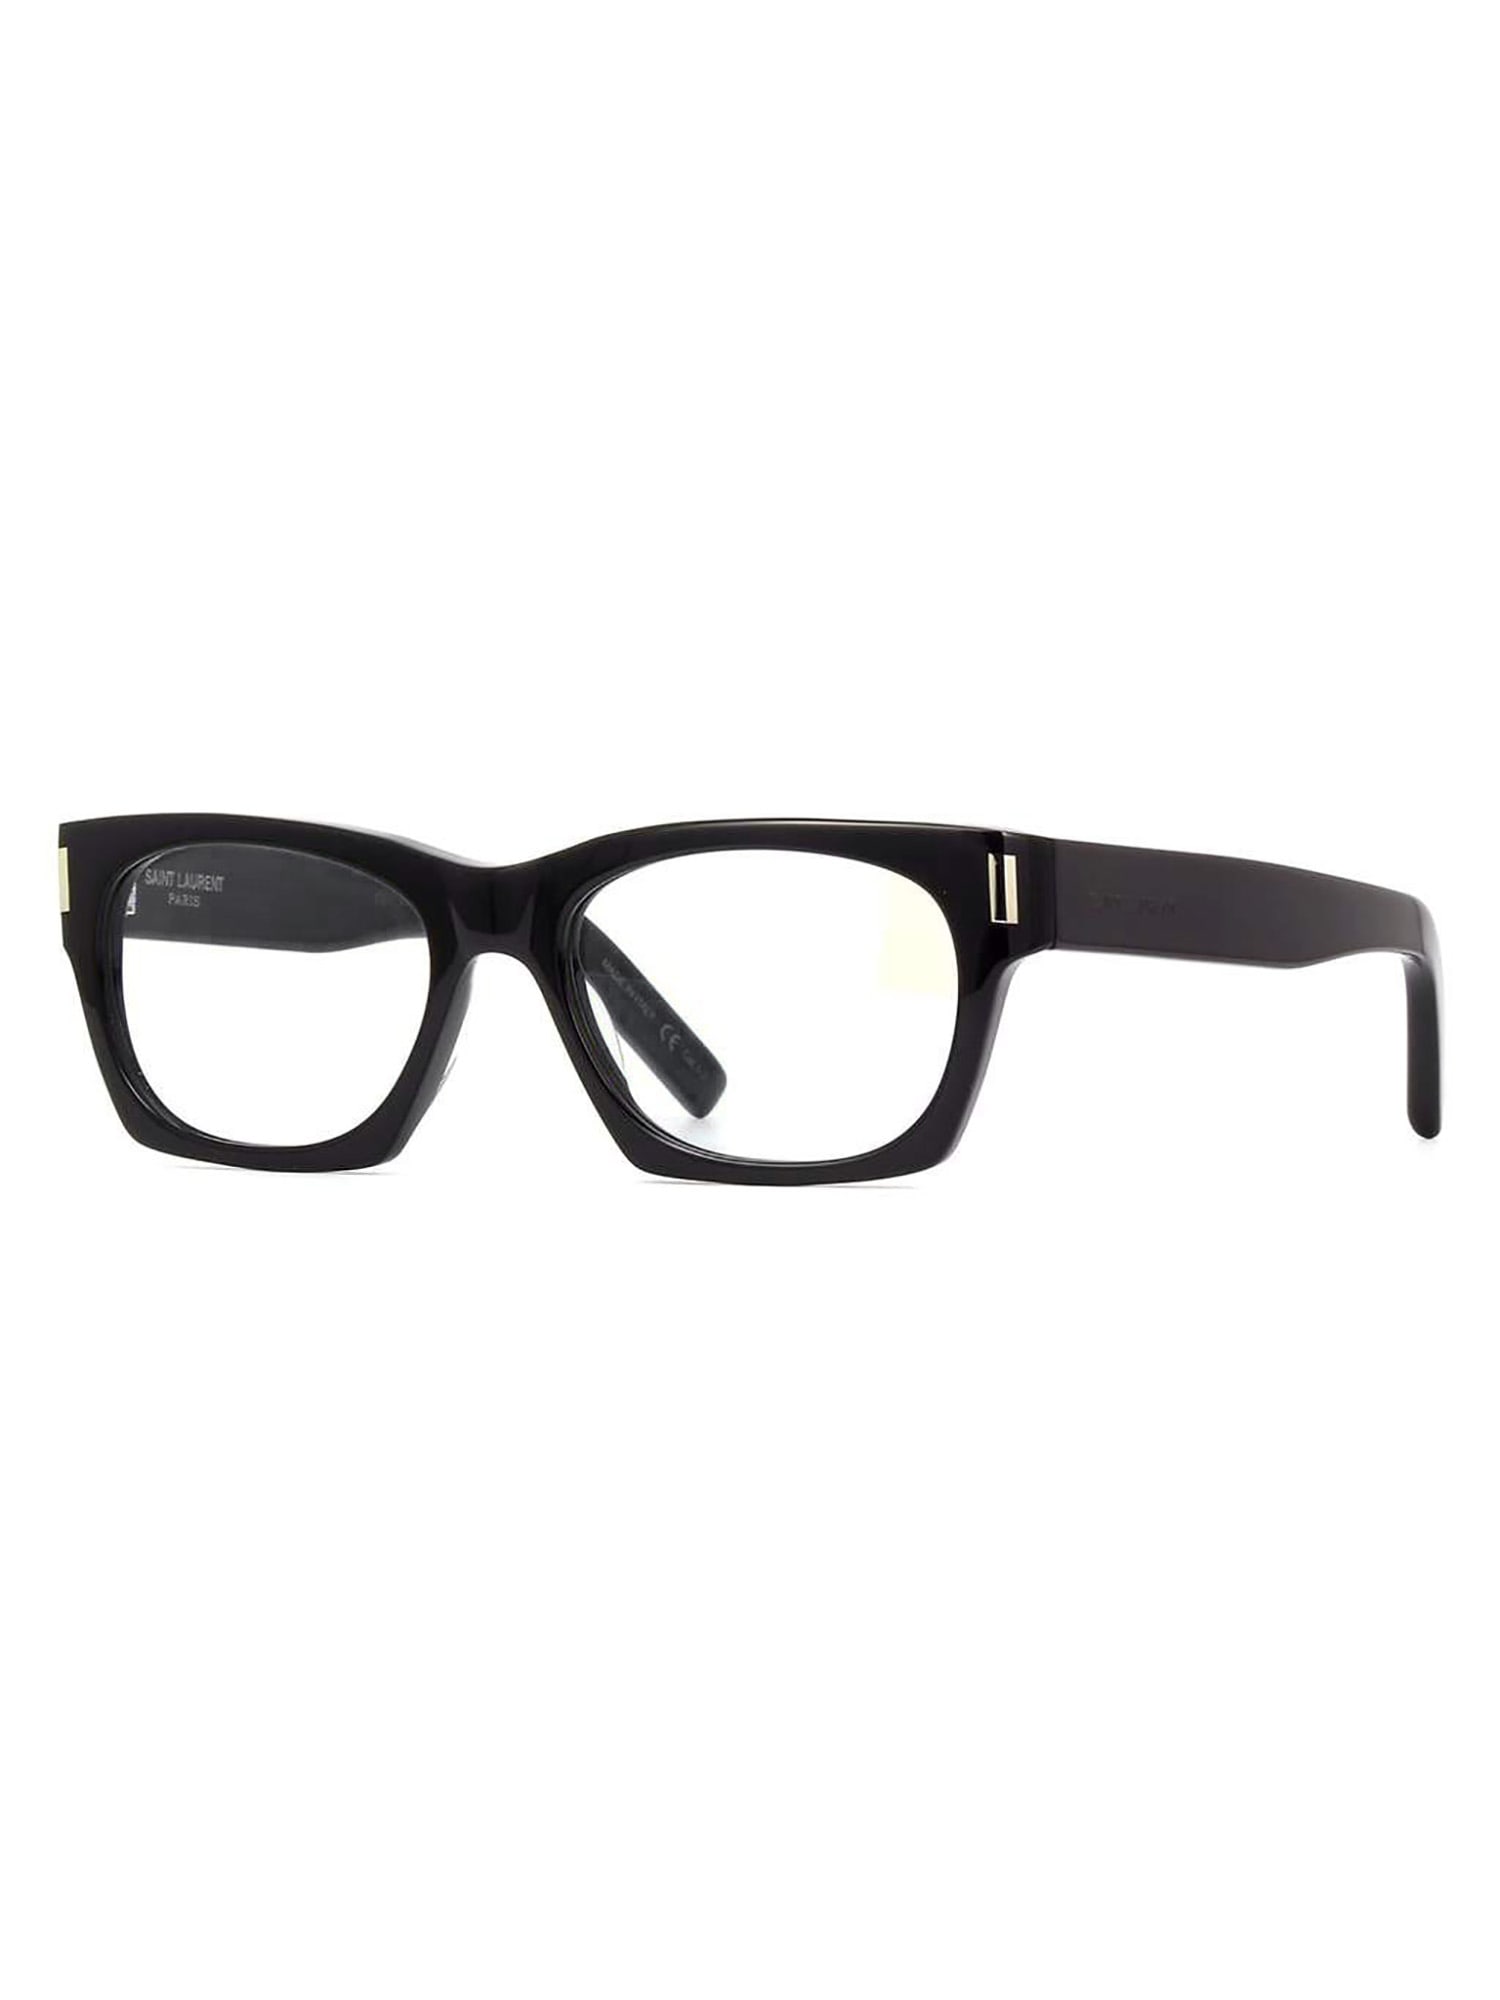 Saint Laurent Eyewear SL 402 Sunglasses